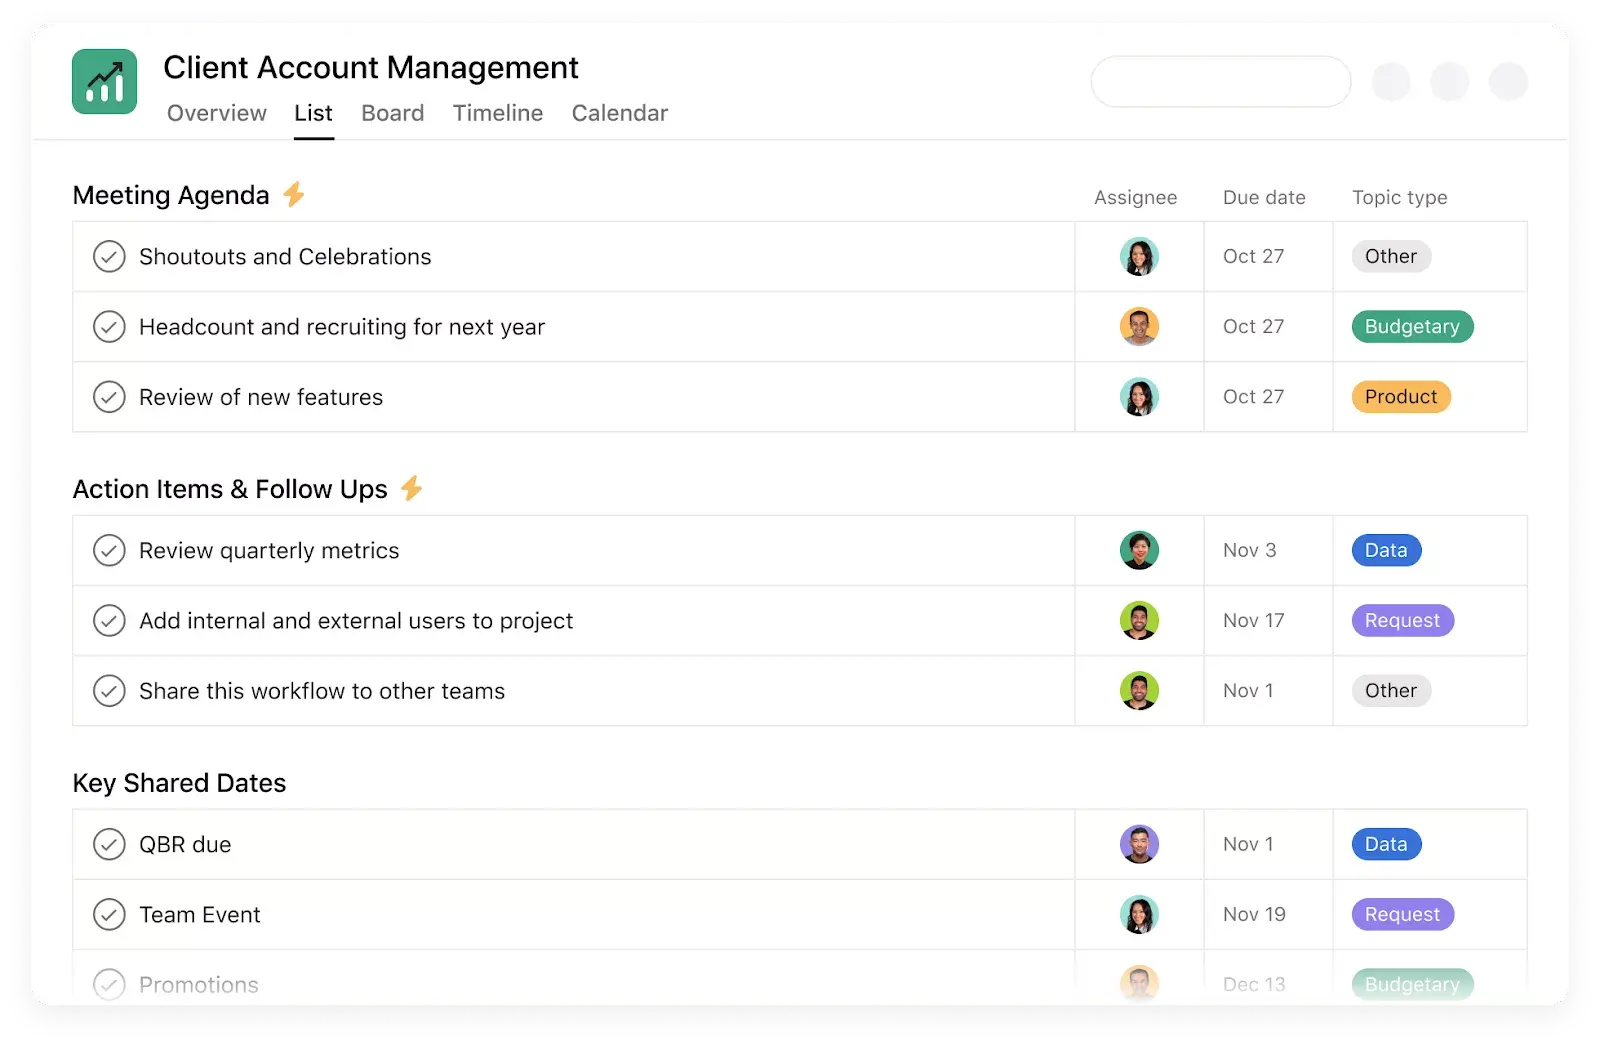 Captura de pantalla de la plantilla para gestión de cuentas de clientes de Stride